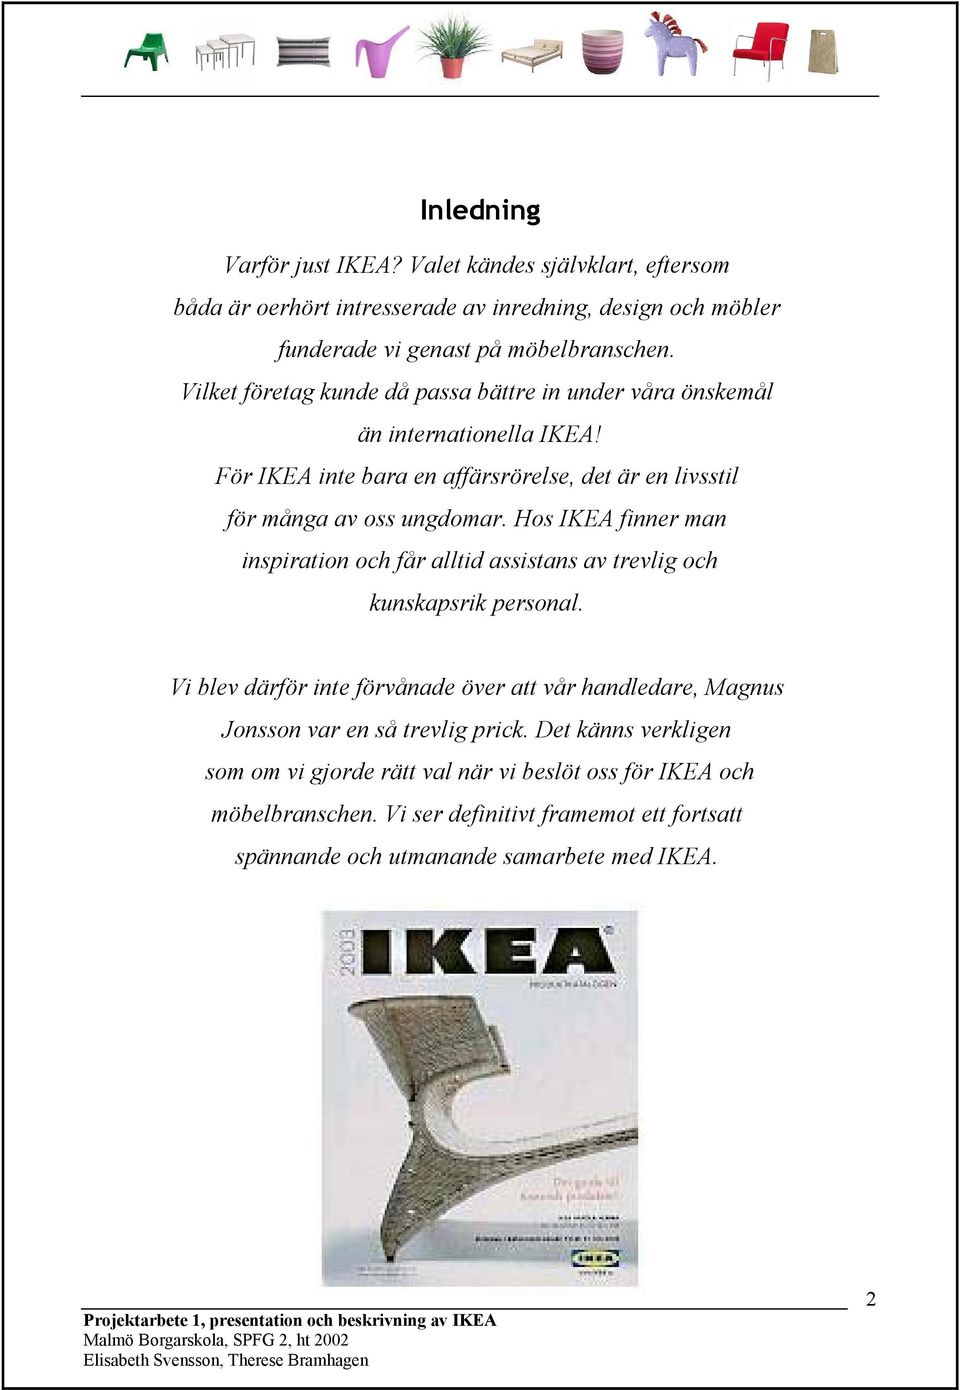 Hos IKEA finner man inspiration och får alltid assistans av trevlig och kunskapsrik personal. Vi blev därför inte förvånade över att vår handledare, Magnus Jonsson var en så trevlig prick.